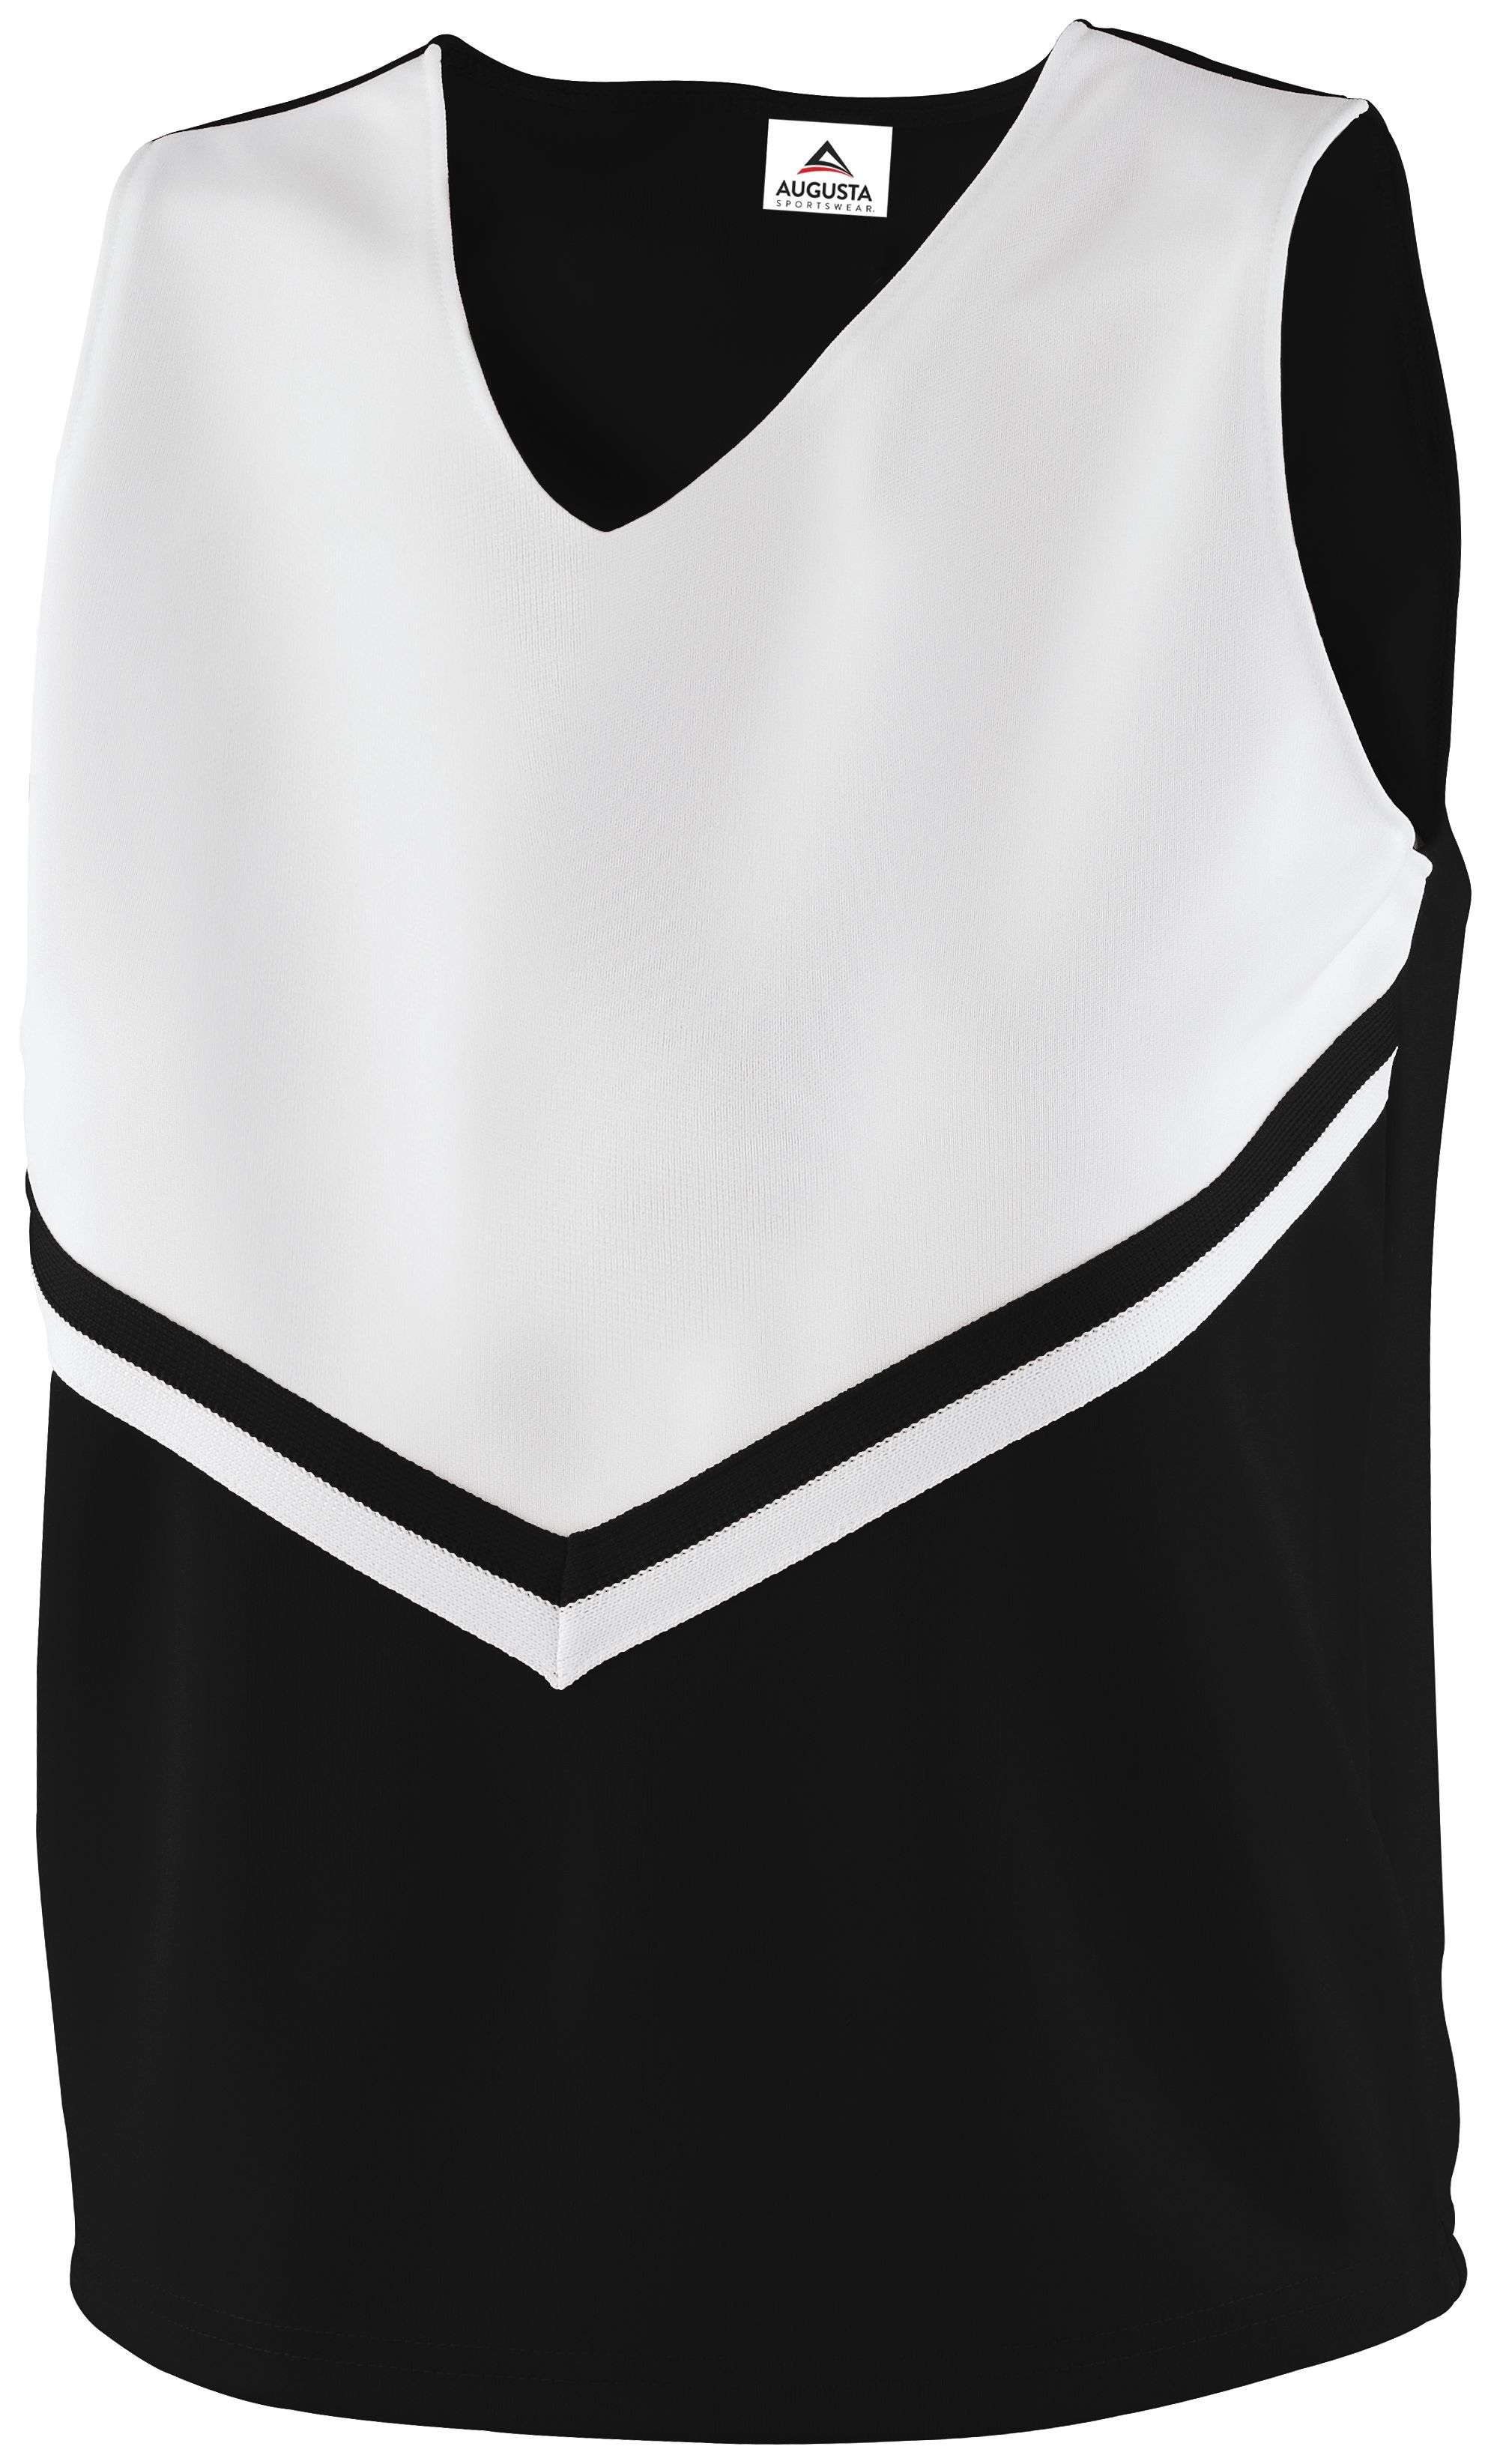 Augusta Sportswear Girls' Pride Shell - 9111